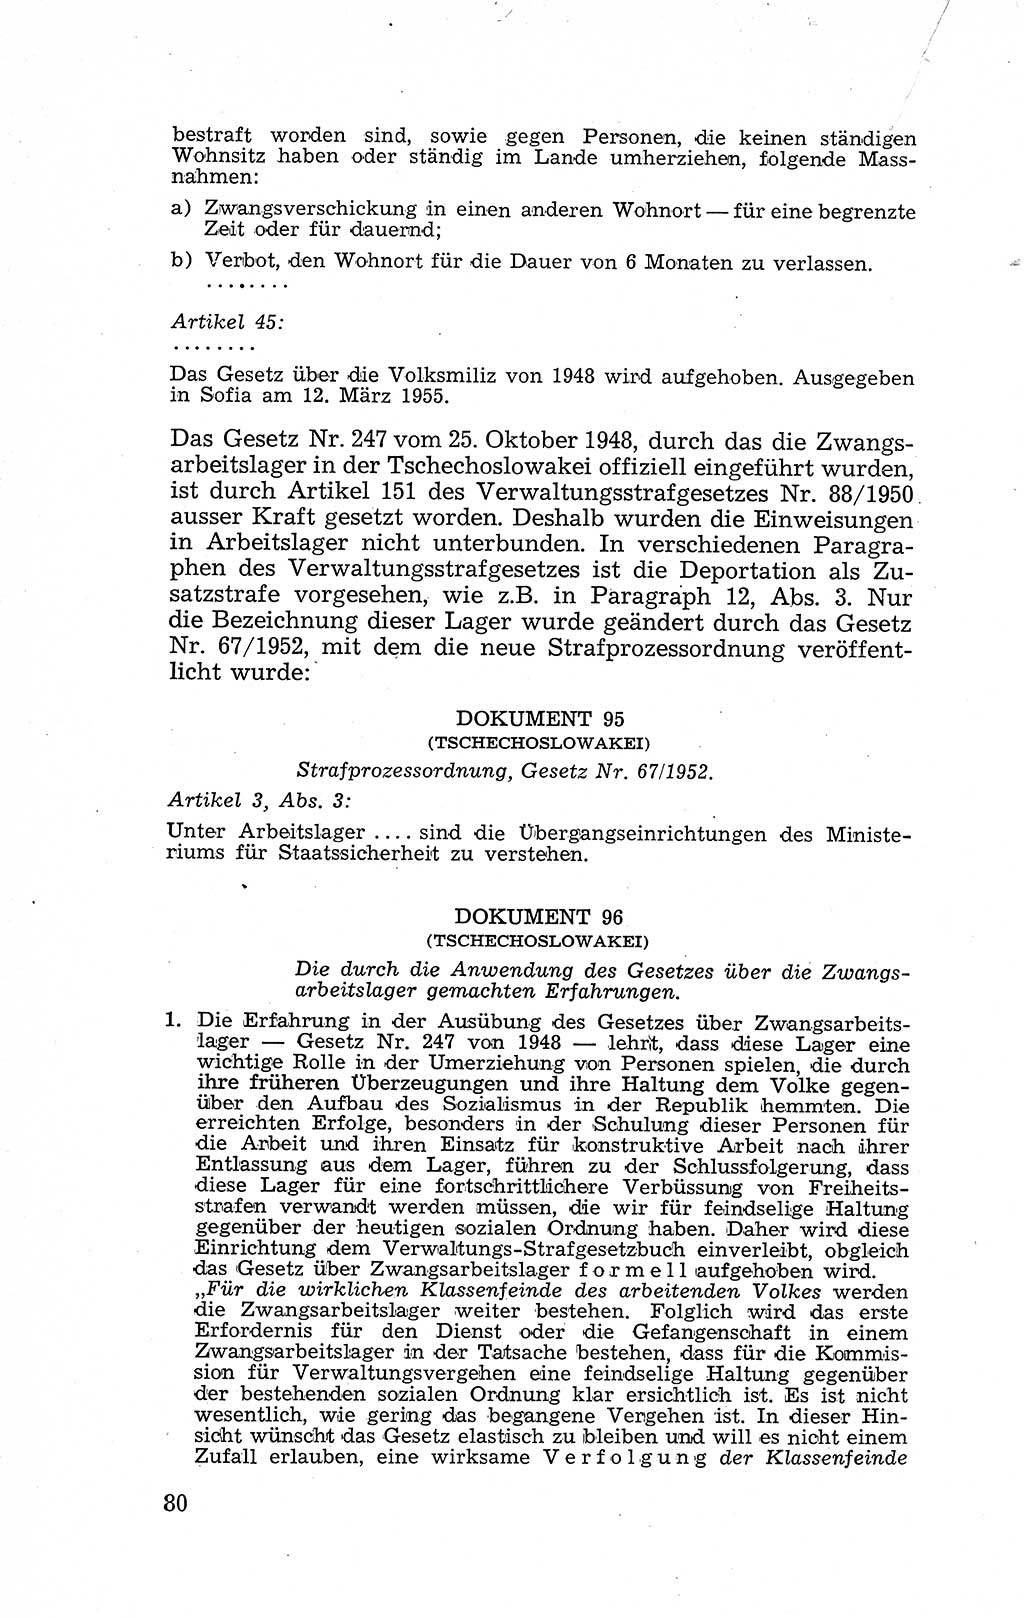 Recht in Fesseln, Dokumente, Internationale Juristen-Kommission [Bundesrepublik Deutschland (BRD)] 1955, Seite 80 (R. Dok. IJK BRD 1955, S. 80)